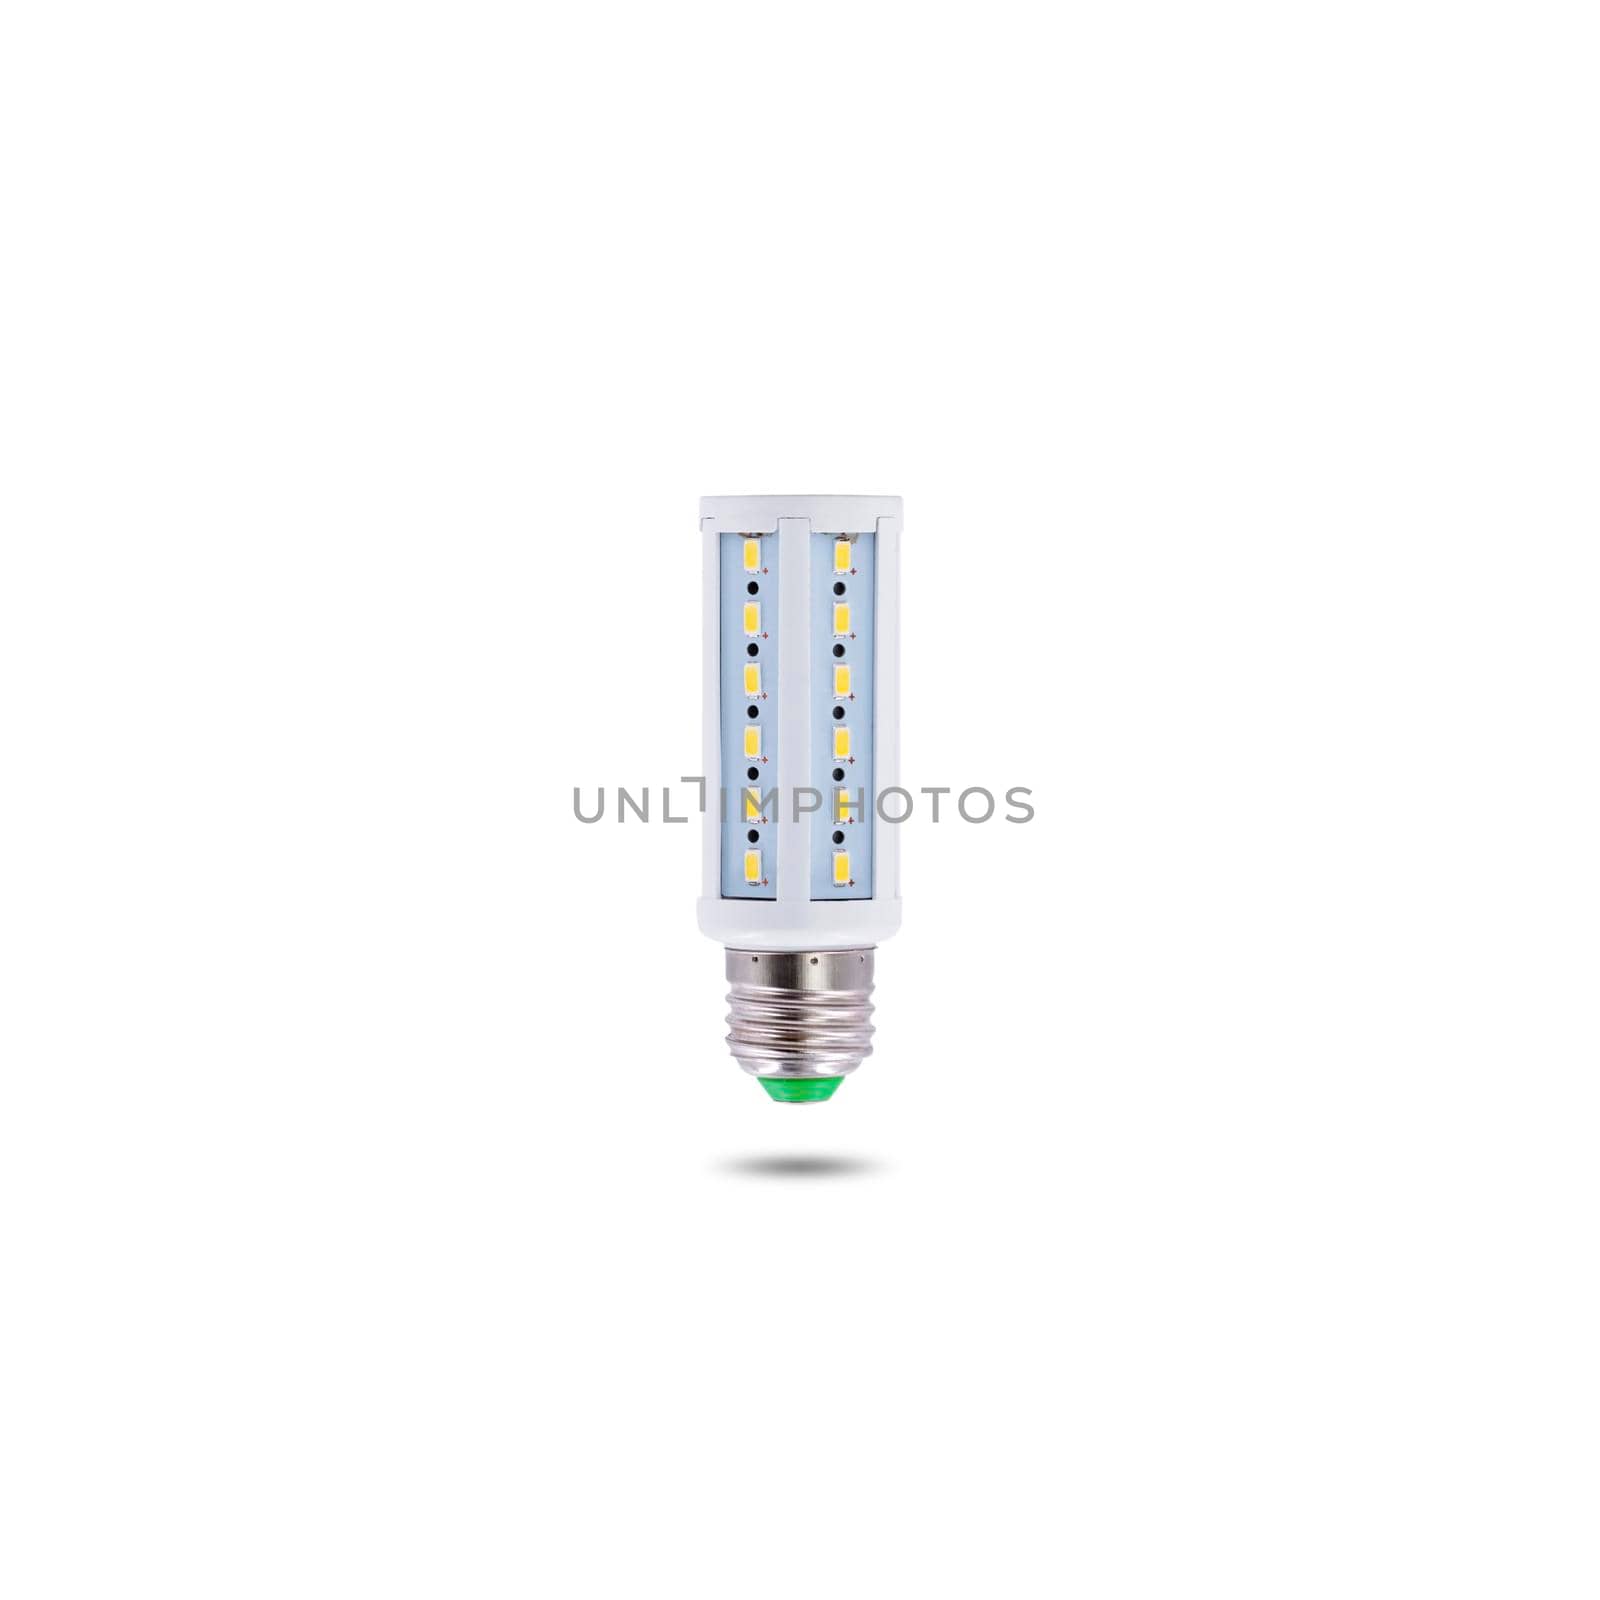 LED energy-saving lamp, screw cap E27 230v isolated on white background. by wattanaphob